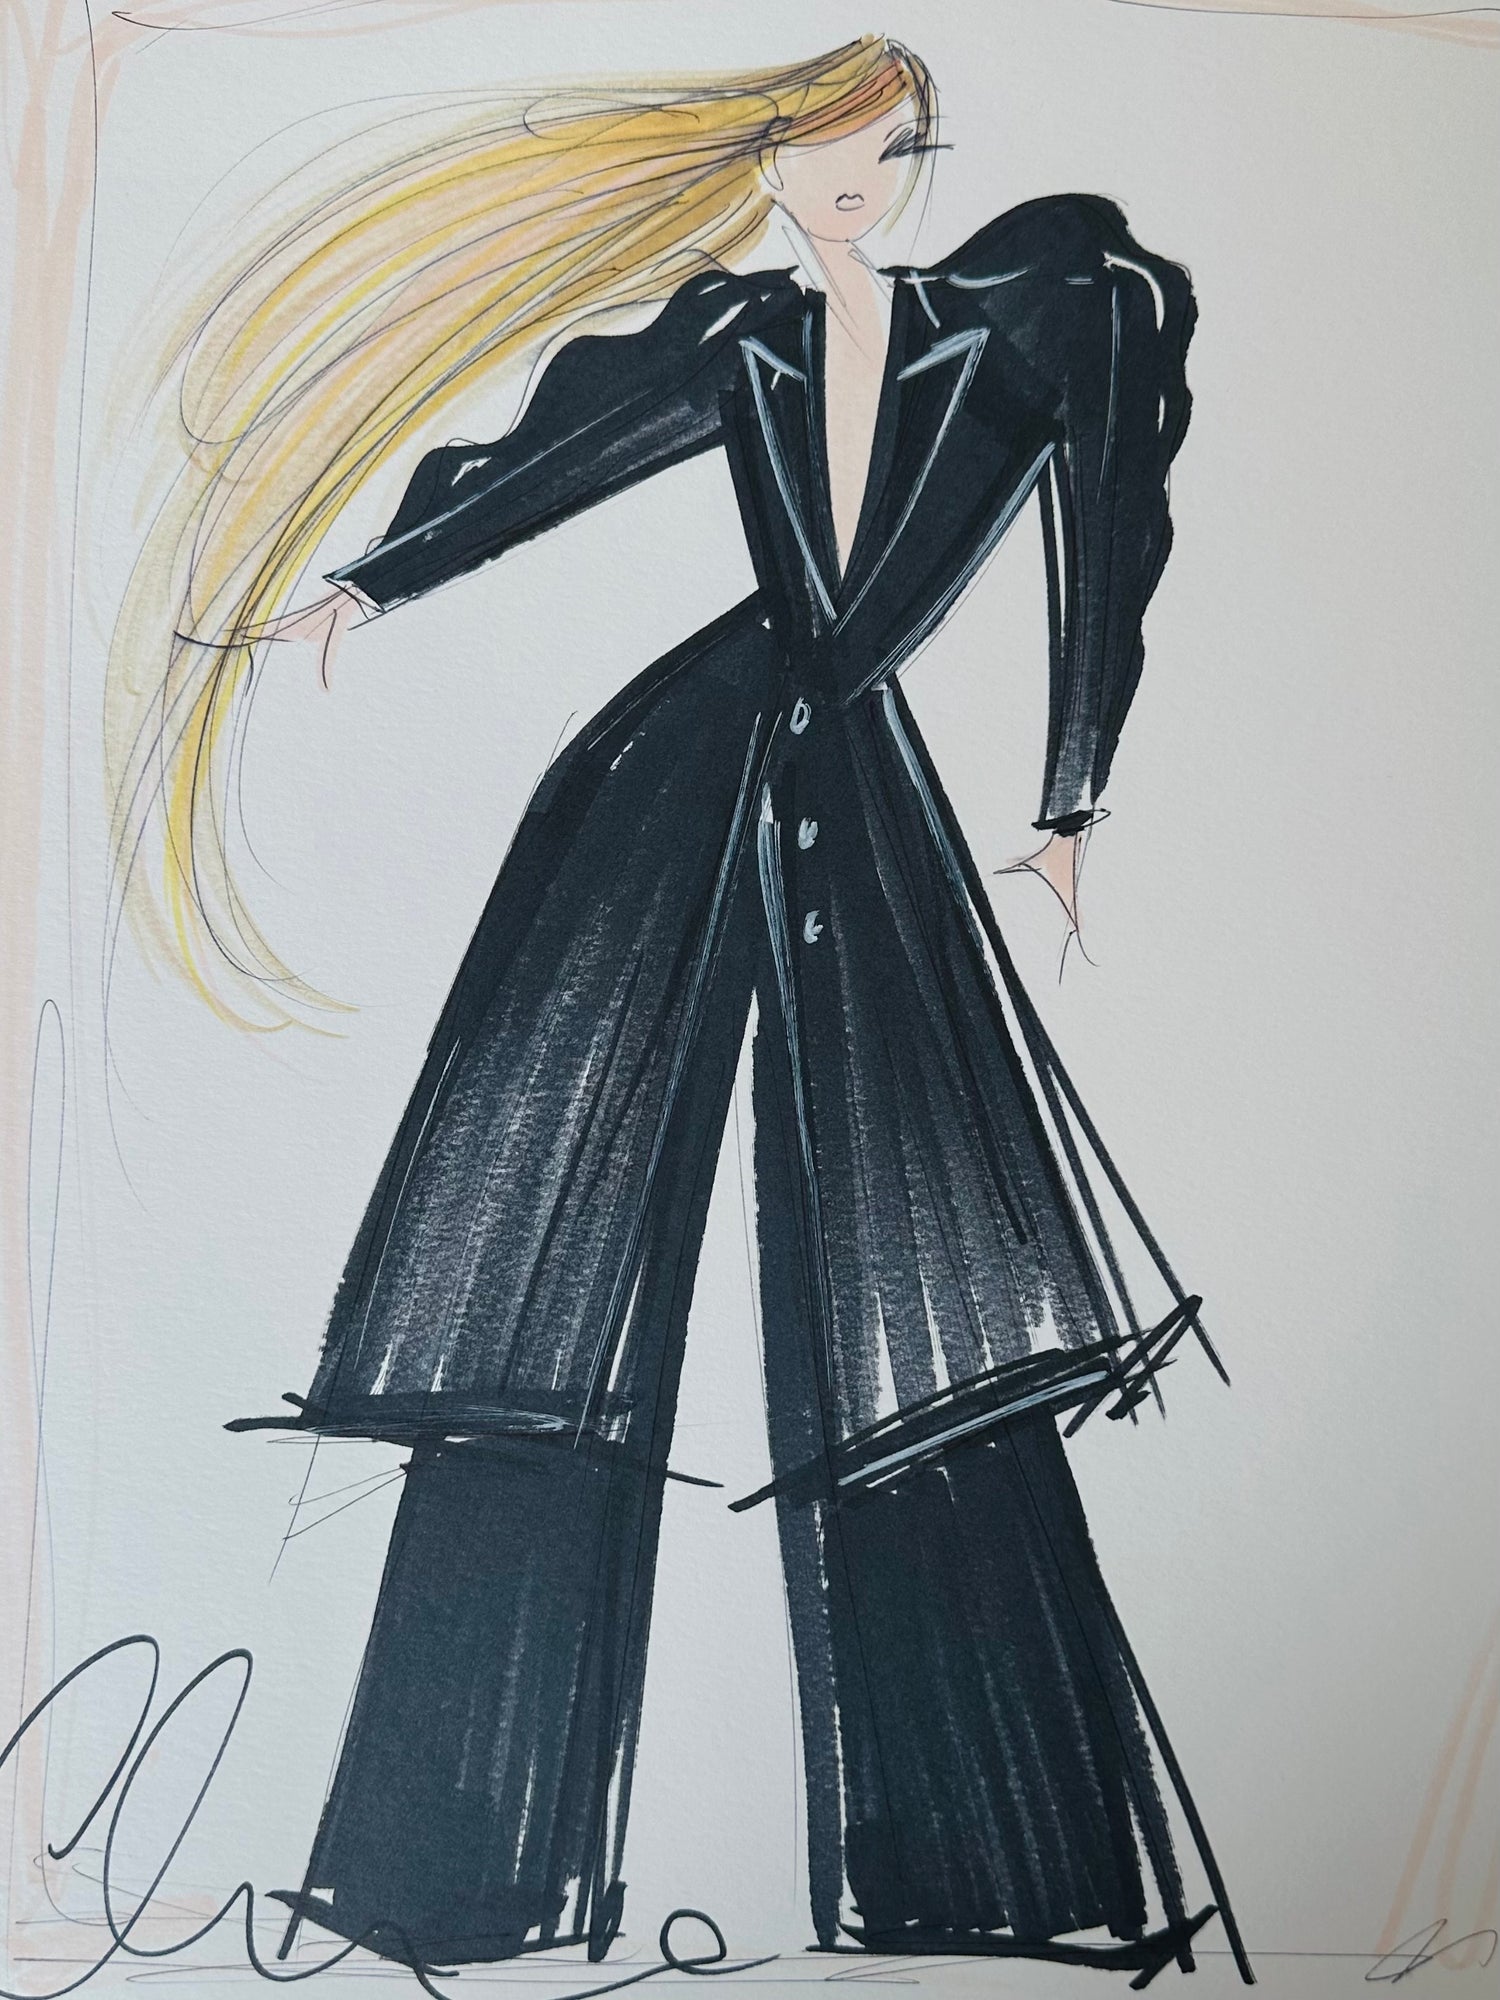 15th Anniversary Show Collection "Avril Lavigne" - Original Sketch